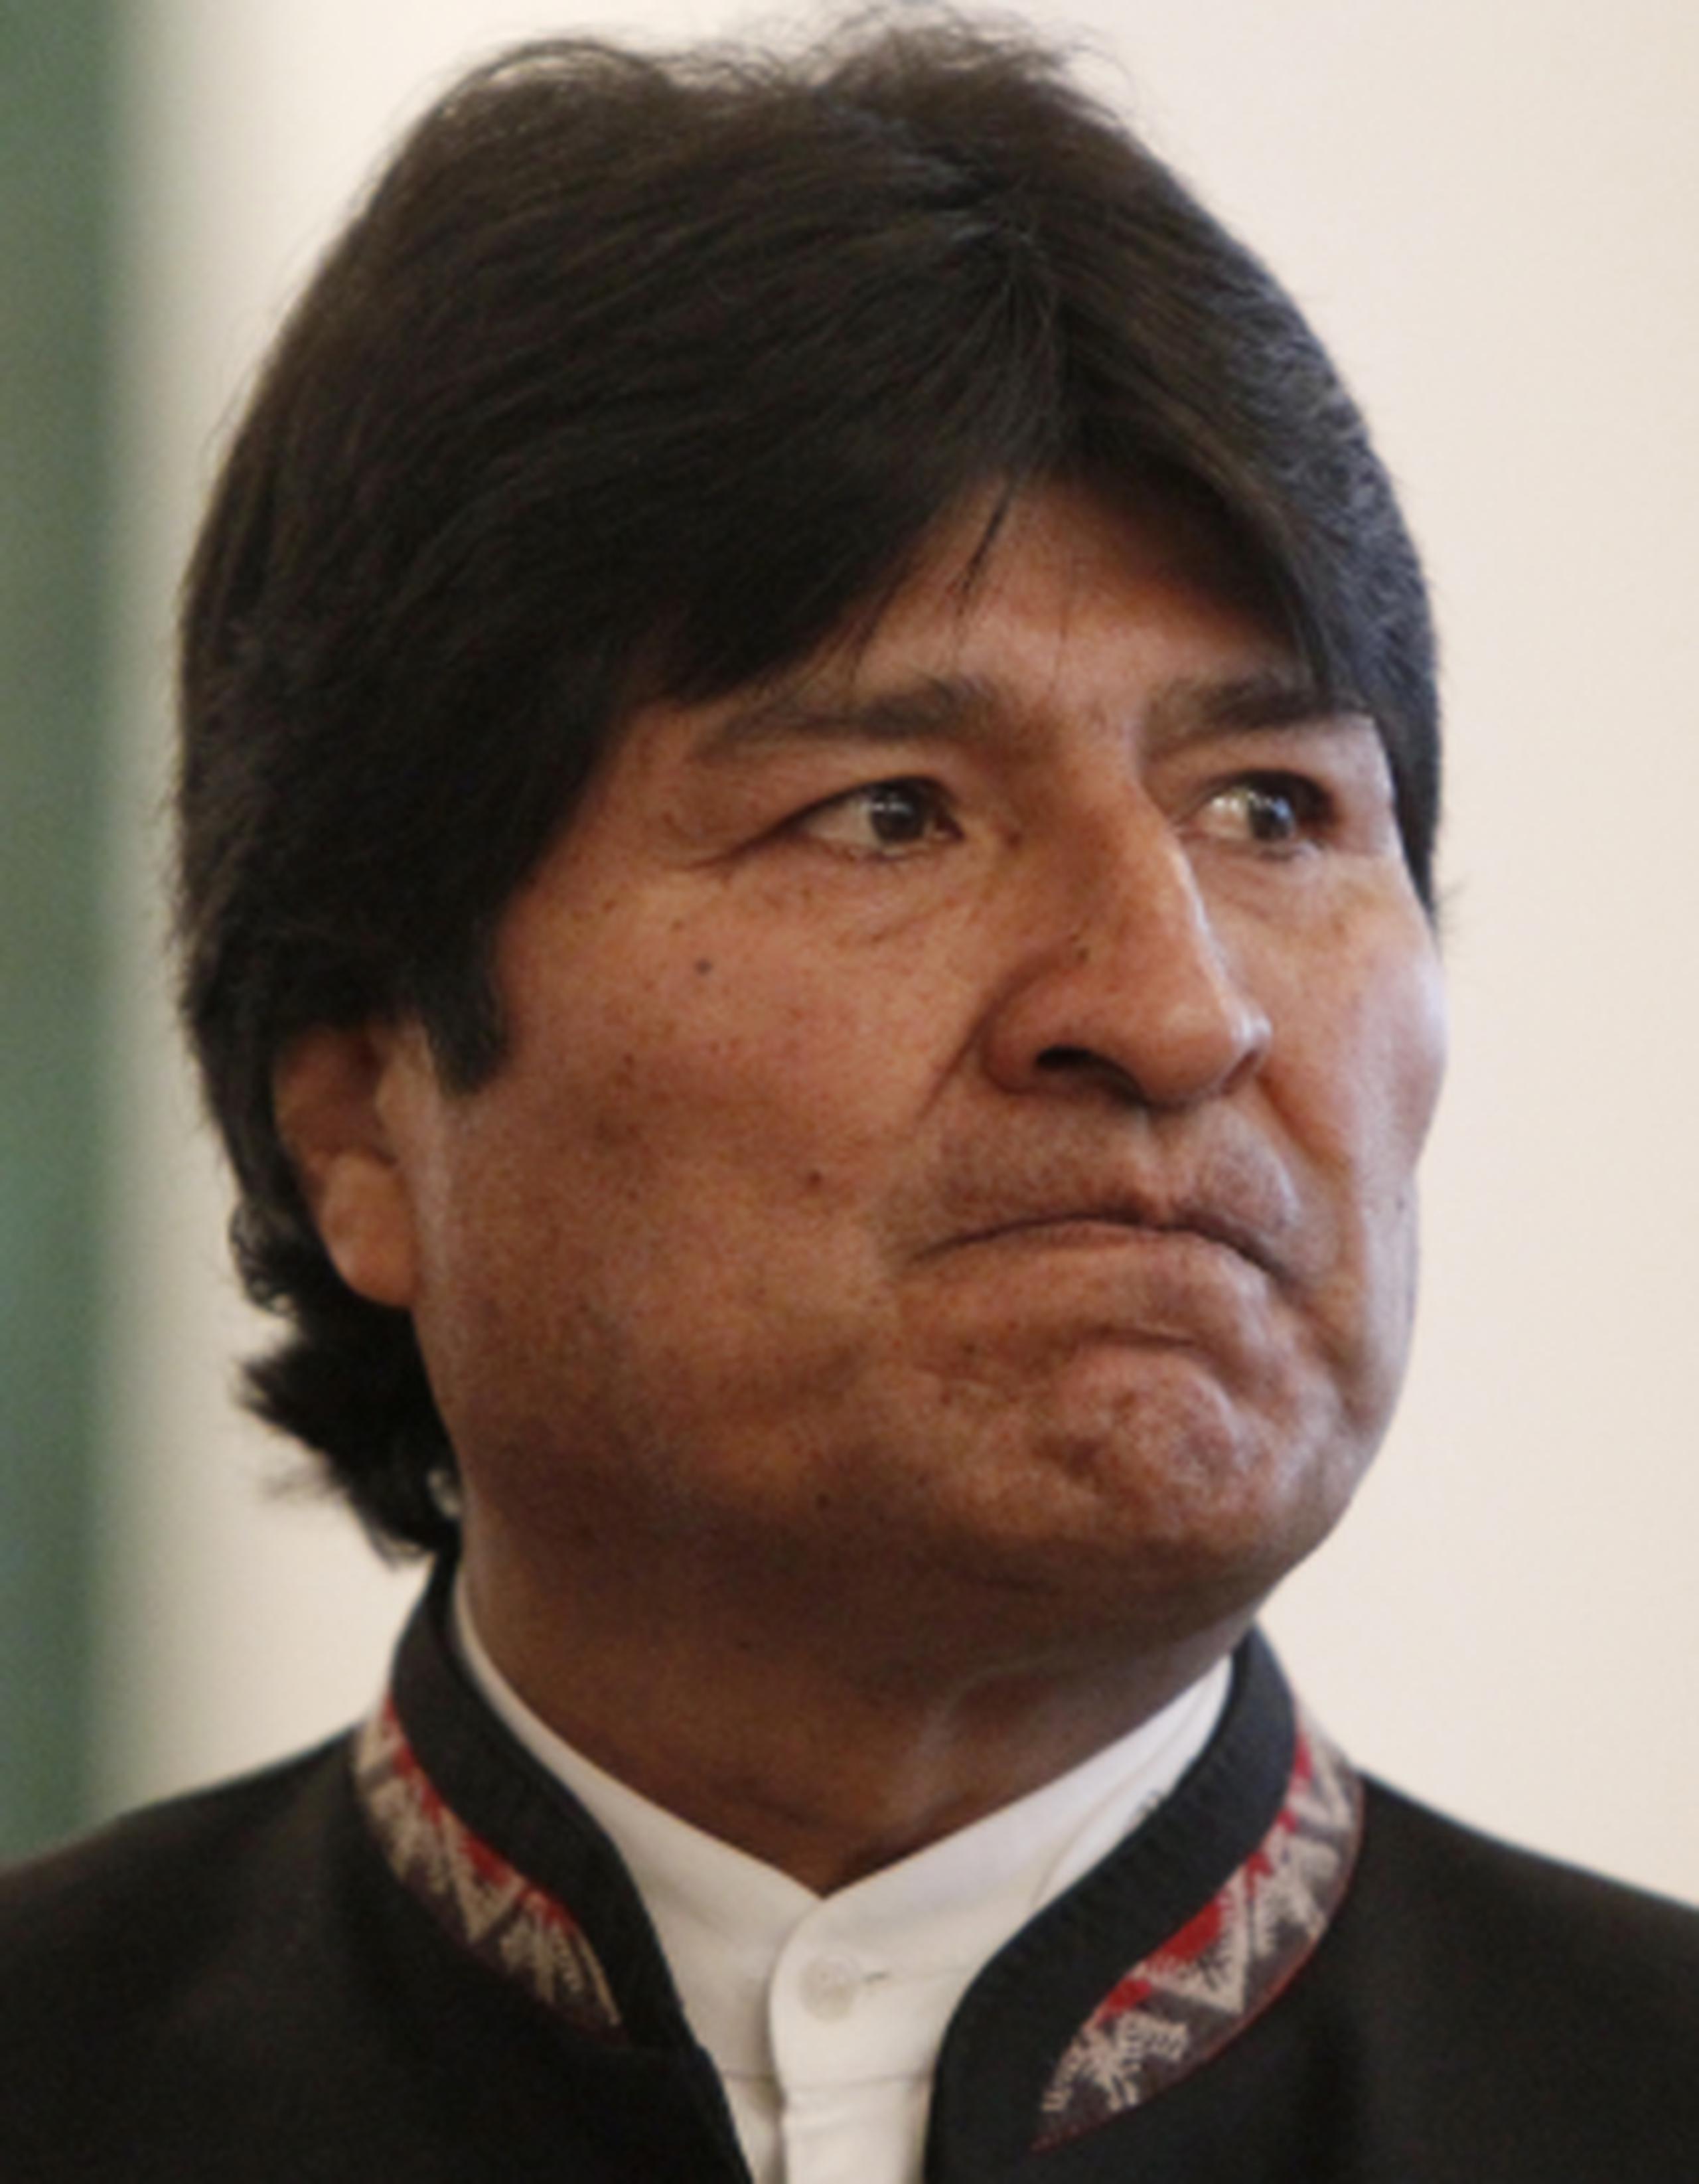 el presidente boliviano rechazó que se esté estudiando la posibilidad de concederle asilo político a Snowden. (AP/Maxim Shemetov)